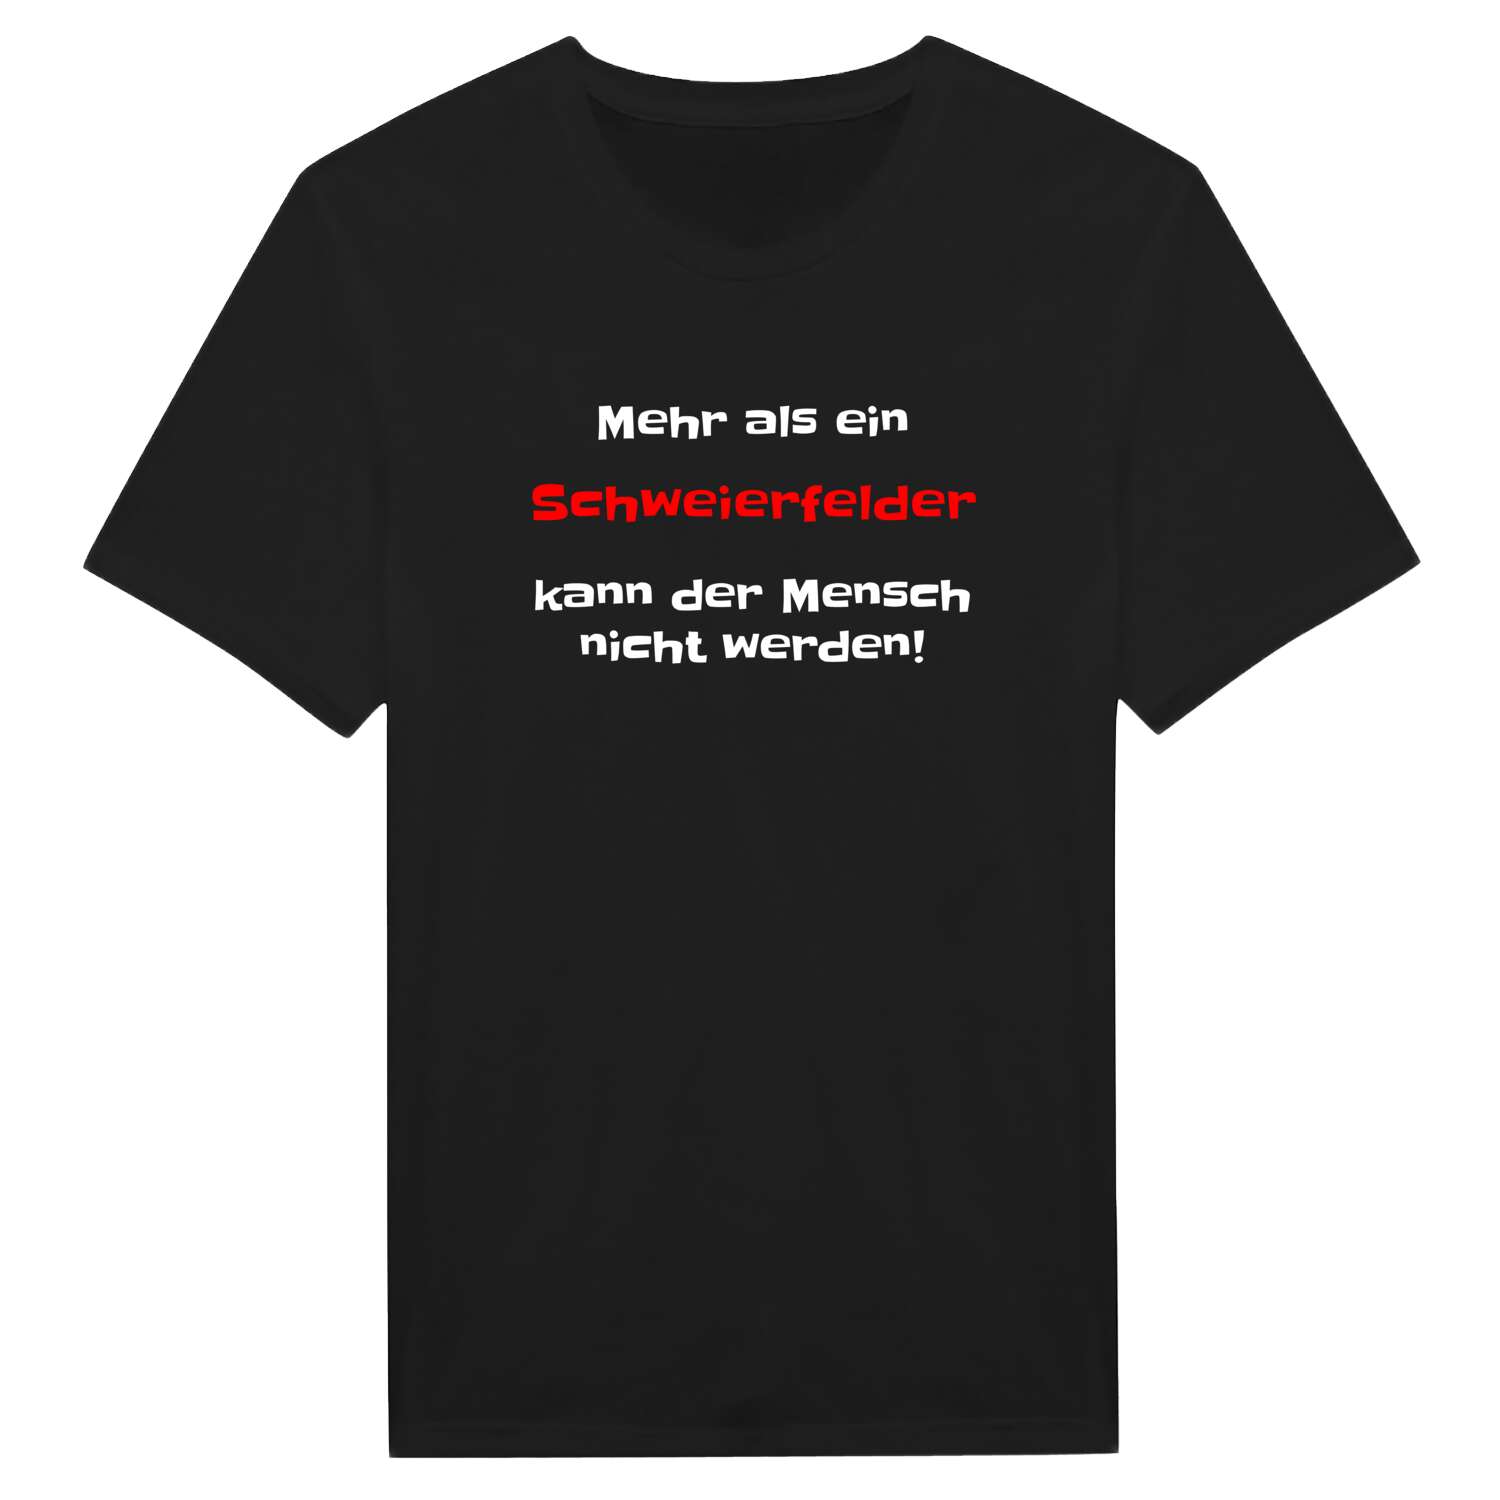 Schweierfeld T-Shirt »Mehr als ein«